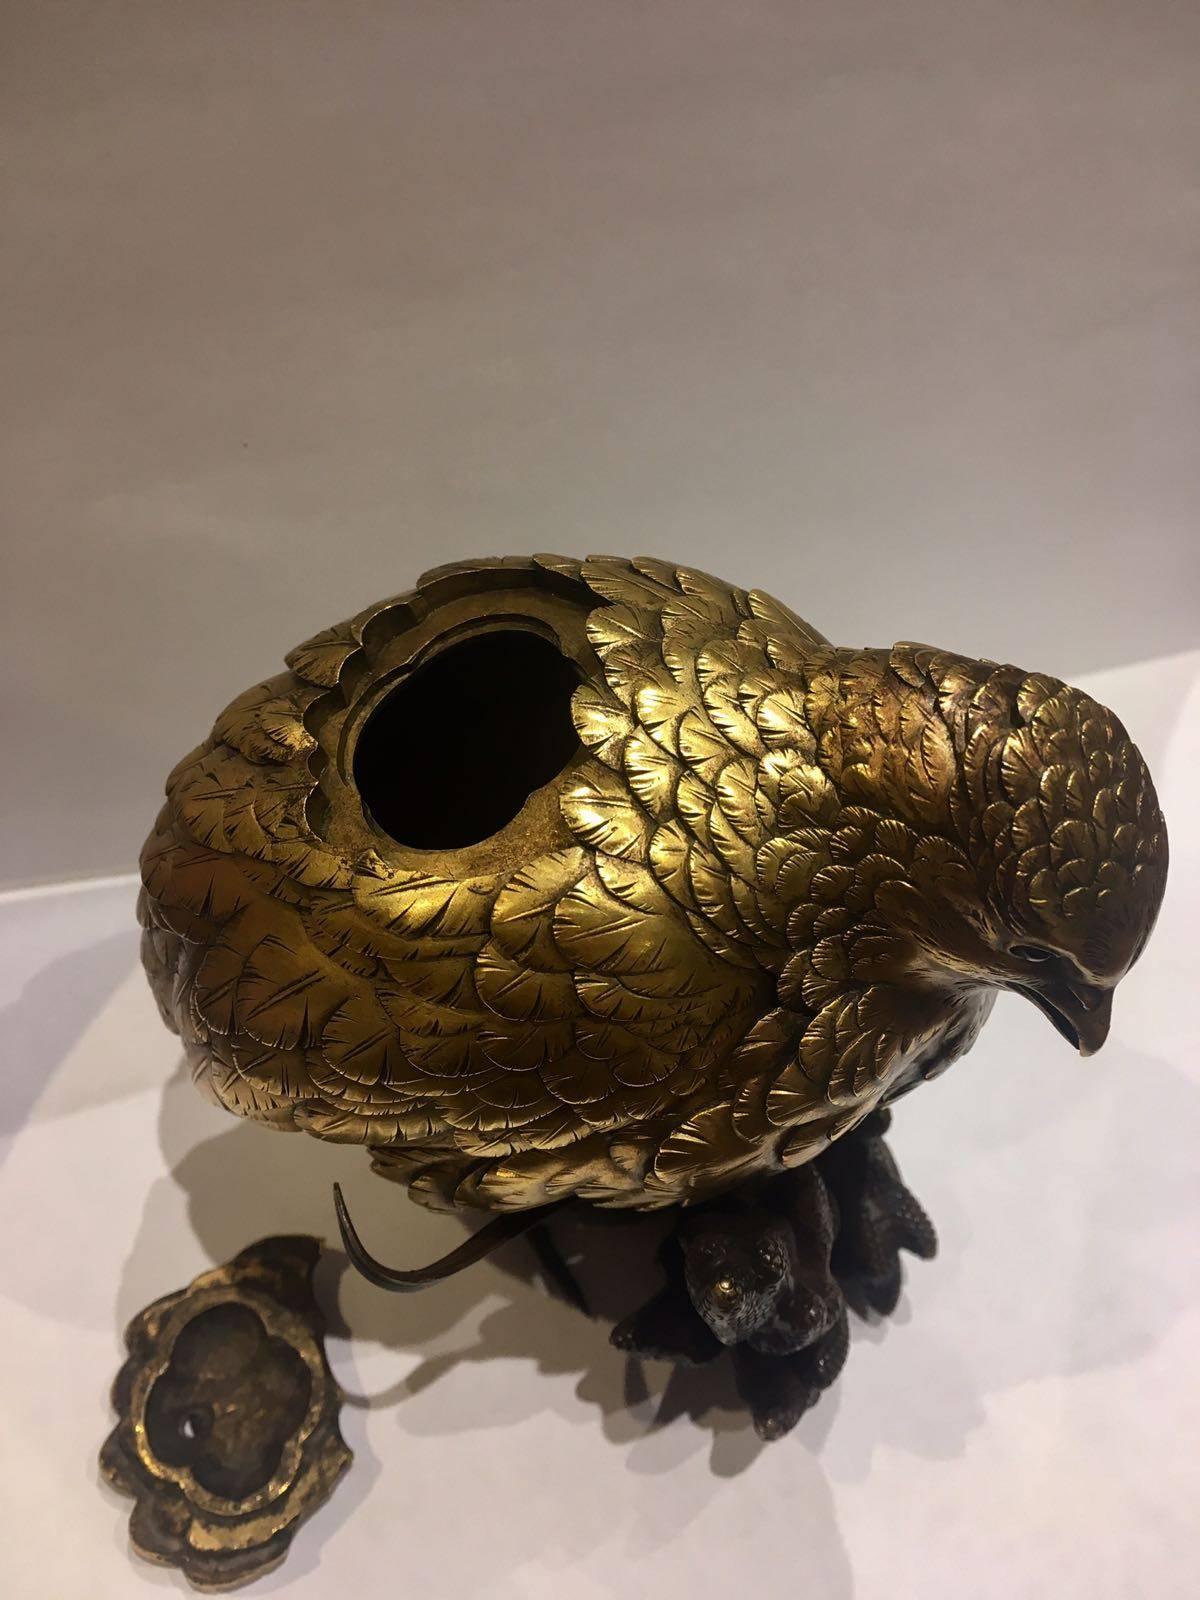 Japanese masterpiece! 19th century, Meiji period, intense burner bird figurine. Made from bronze.